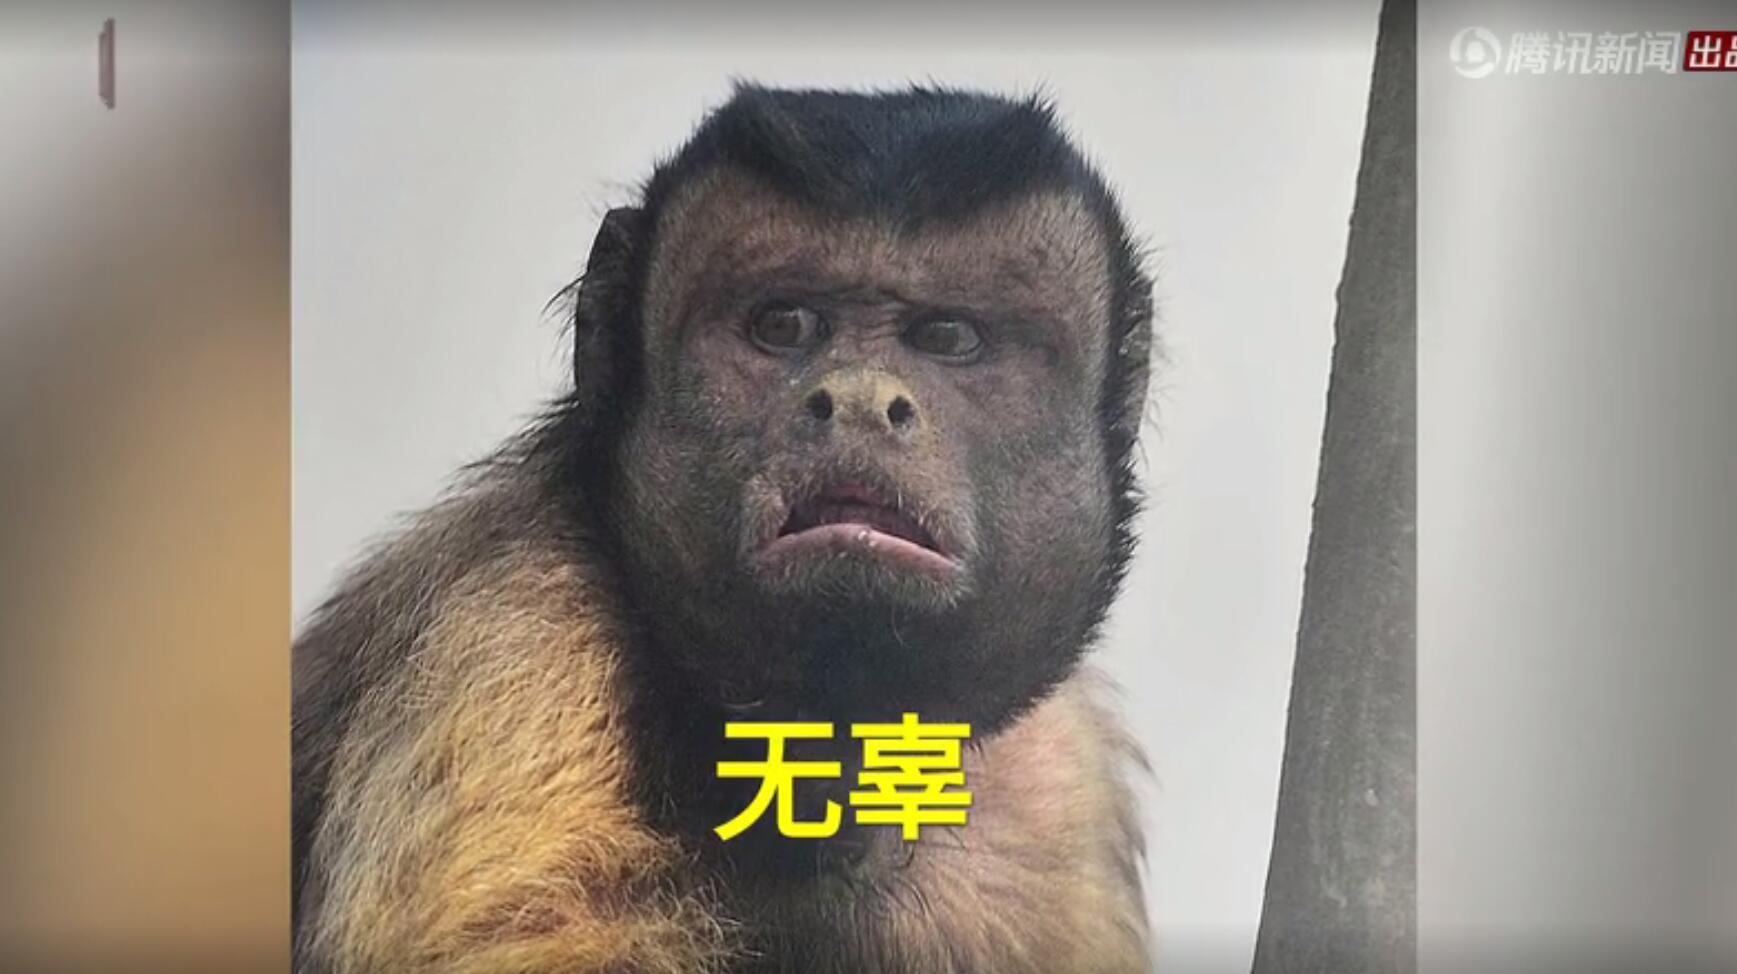 2018年3月,天津动物园一只猴子由于自带表情包效果而蹿红网络,给人们